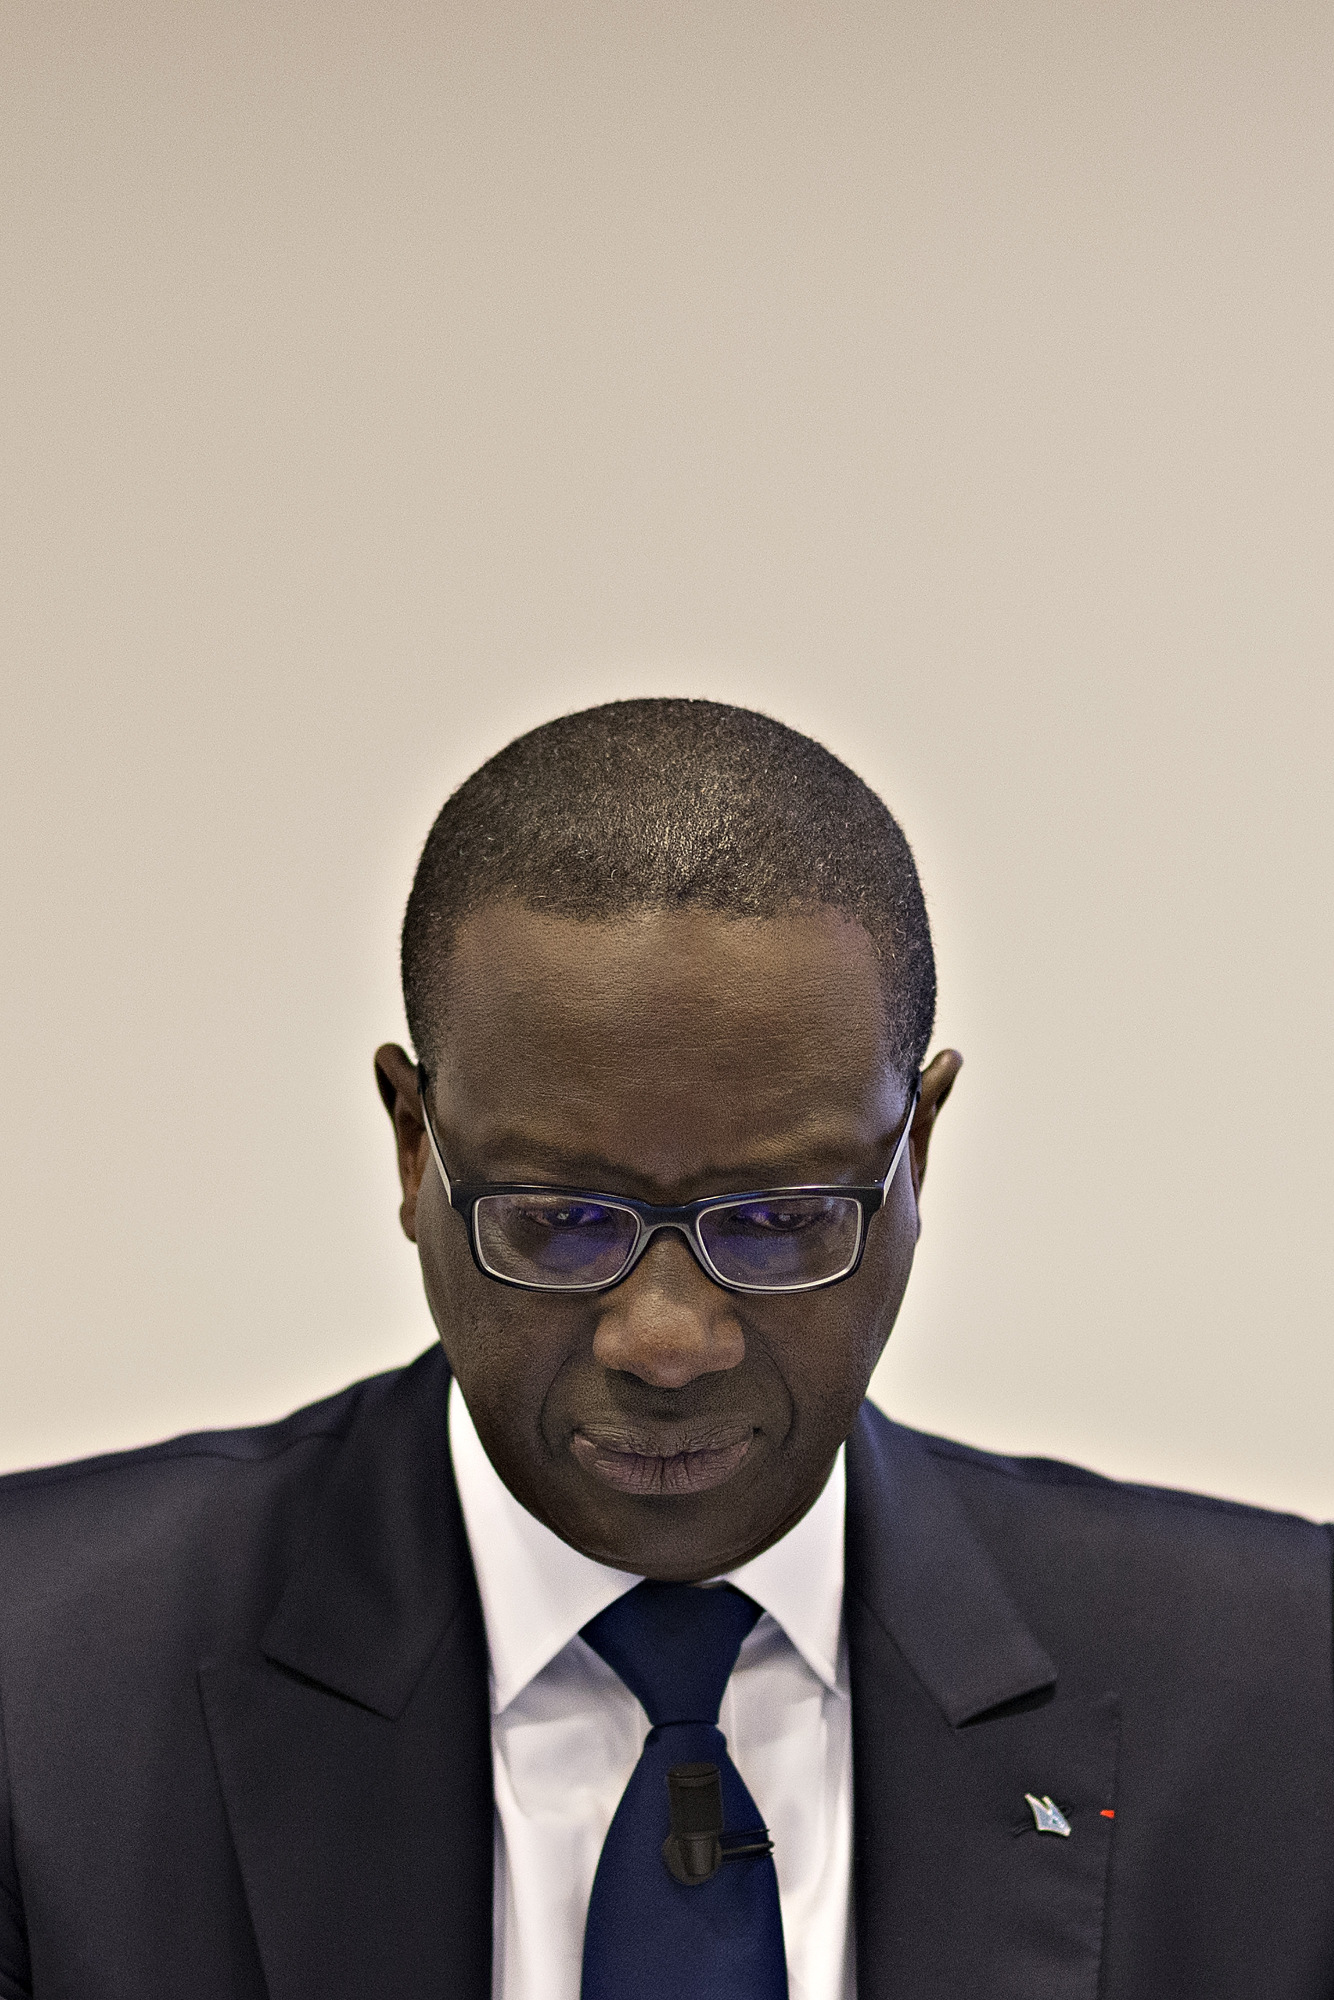 Tidjane Thiam, CEO at Credit Suisse.